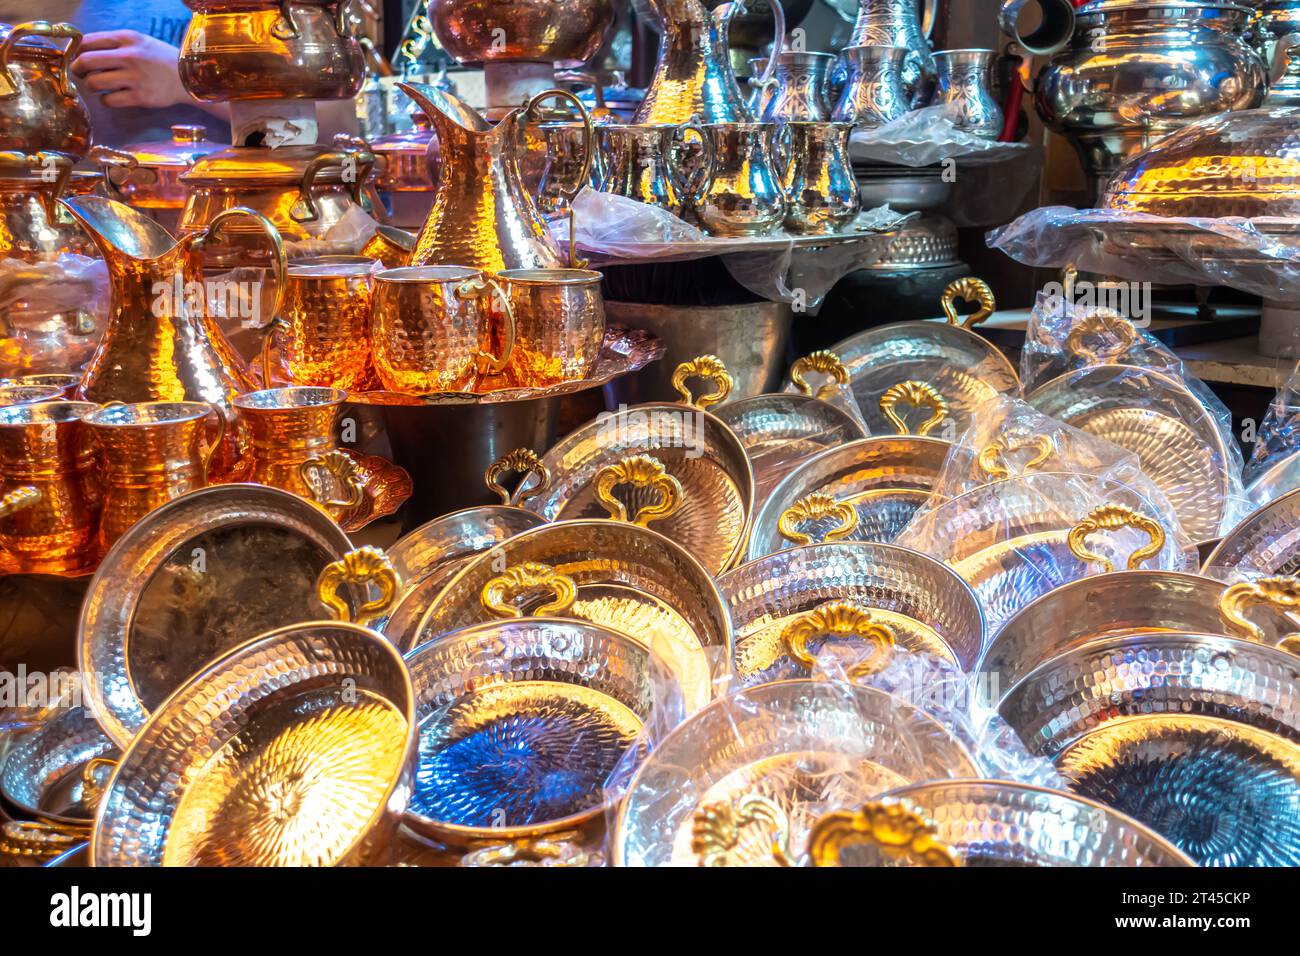 Juegos de té turcos tradicionales, ollas, utensilios de cocina vendidos en un mercado en Gaziantep Turquía Foto de stock